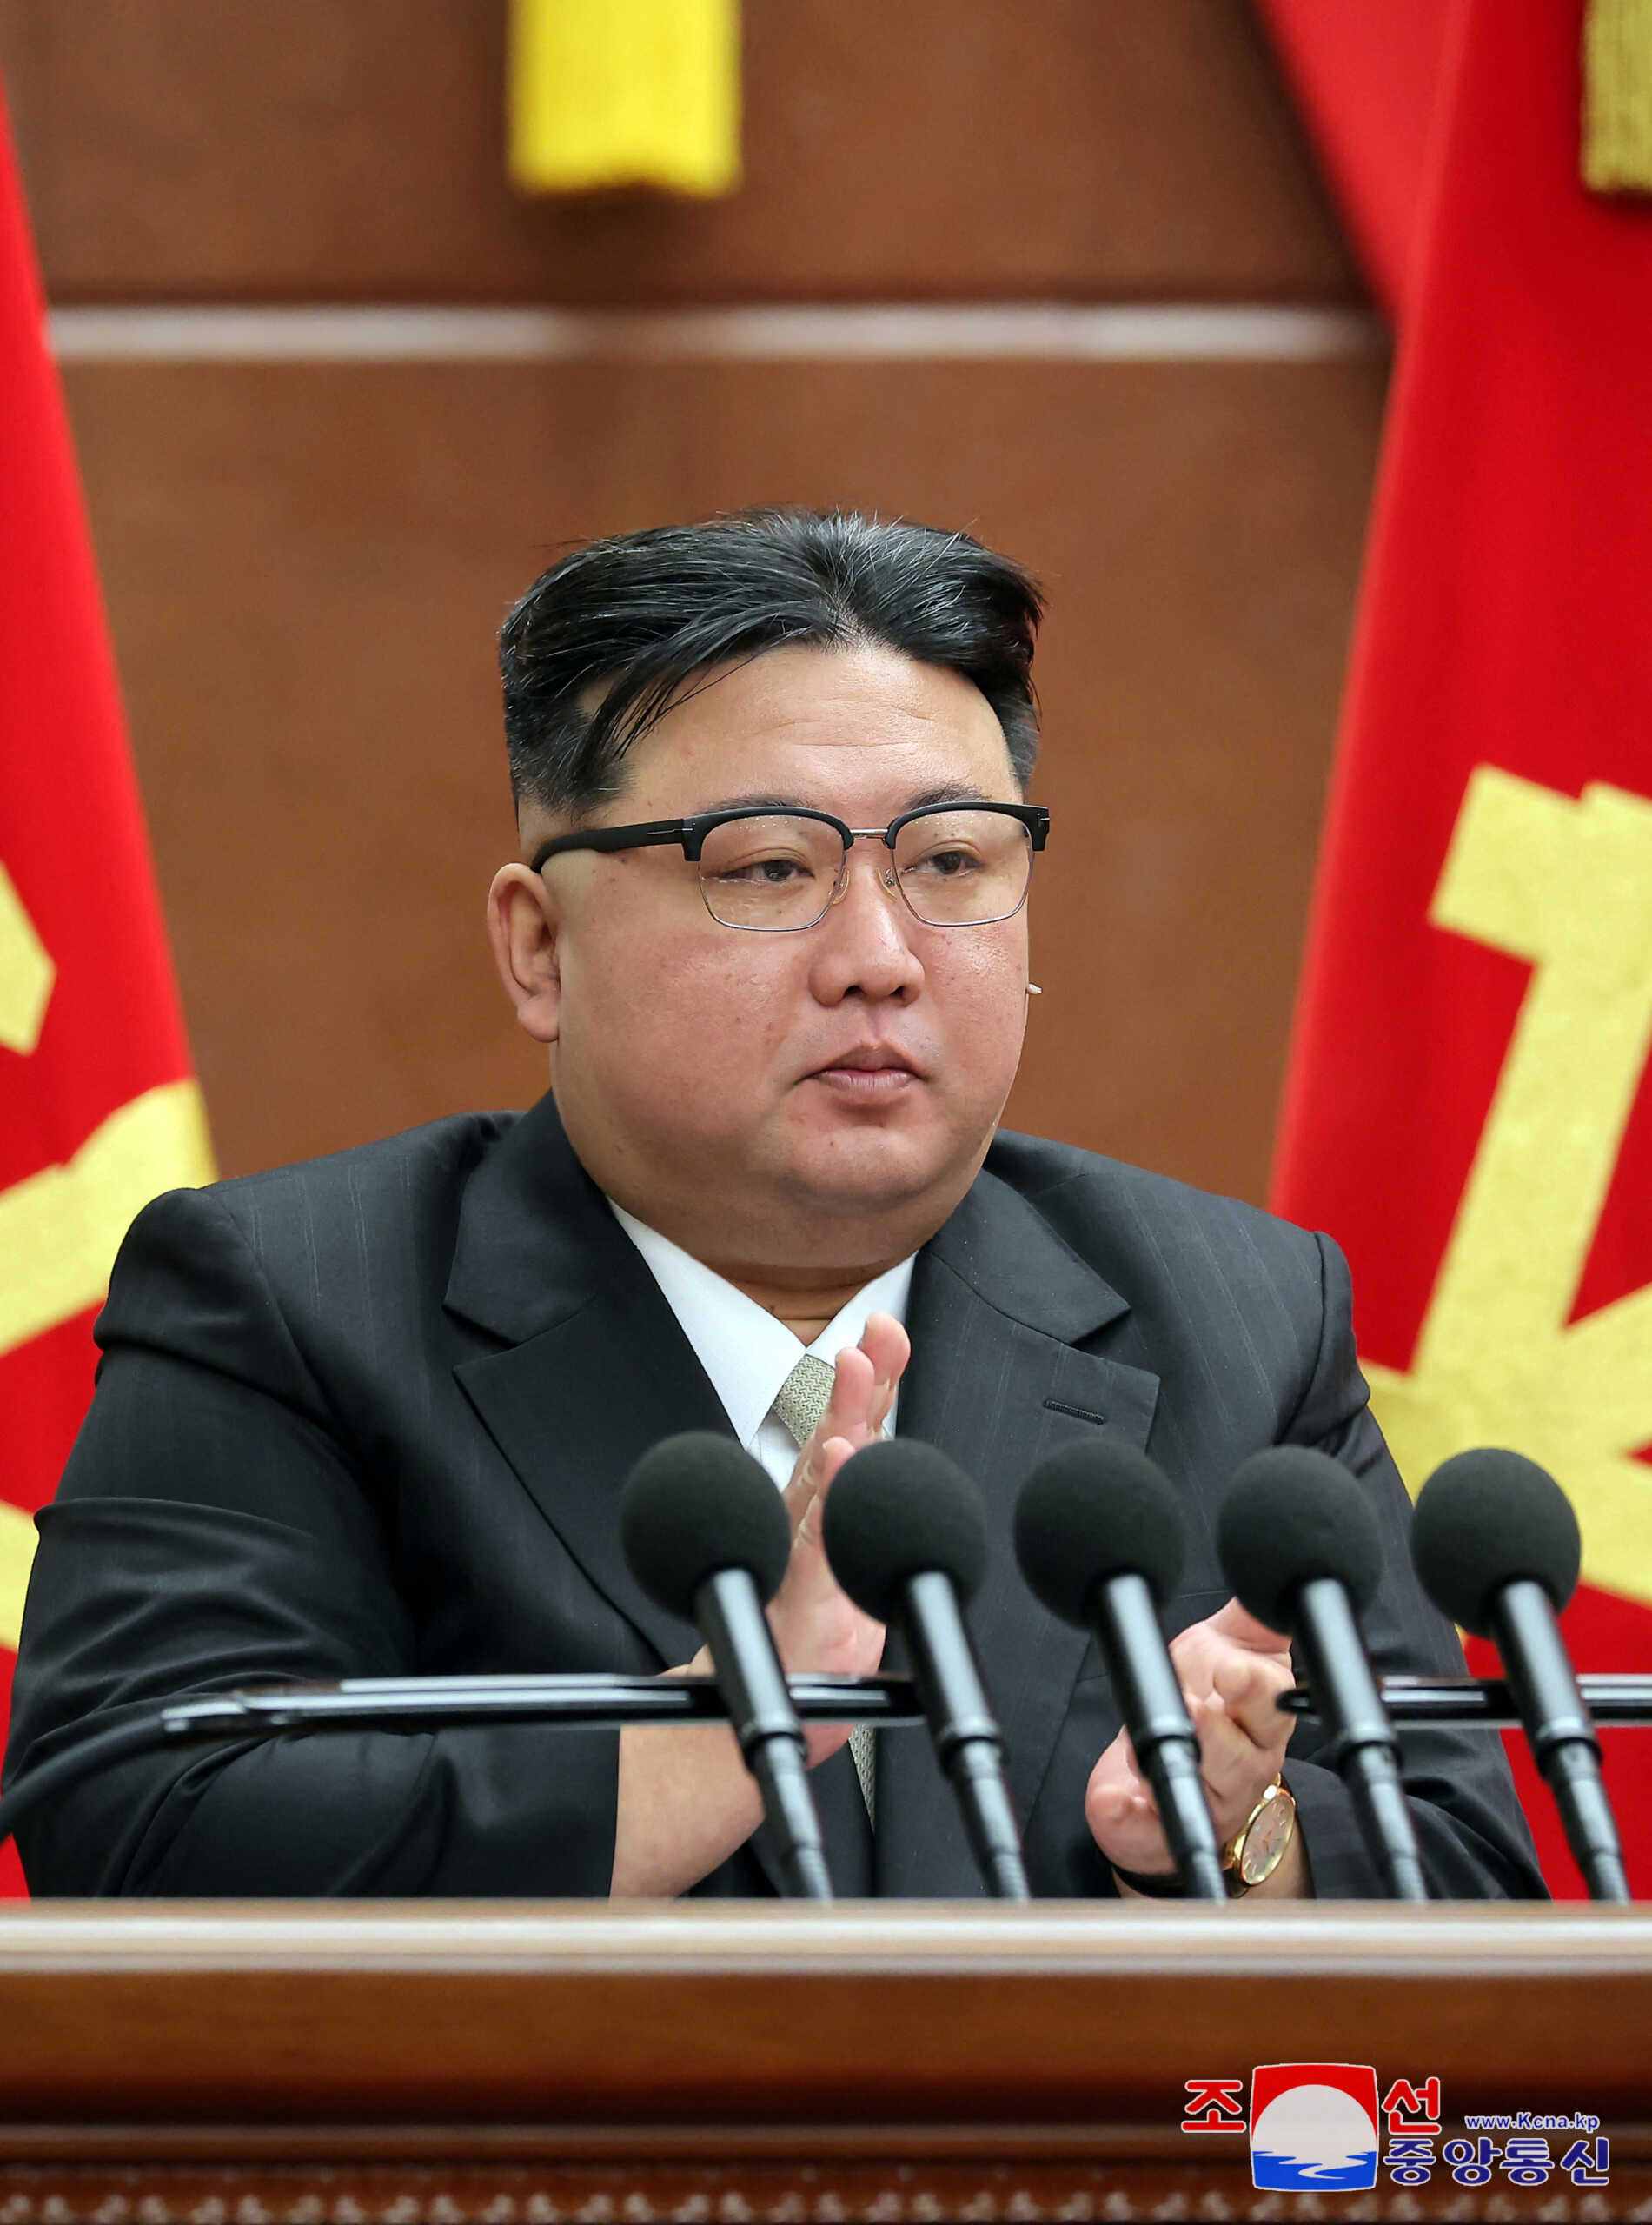 Κιμ Γιονγκ Ουν: Προετοιμάζει την Βόρεια Κορέα για πόλεμο κατά των ΗΠΑ